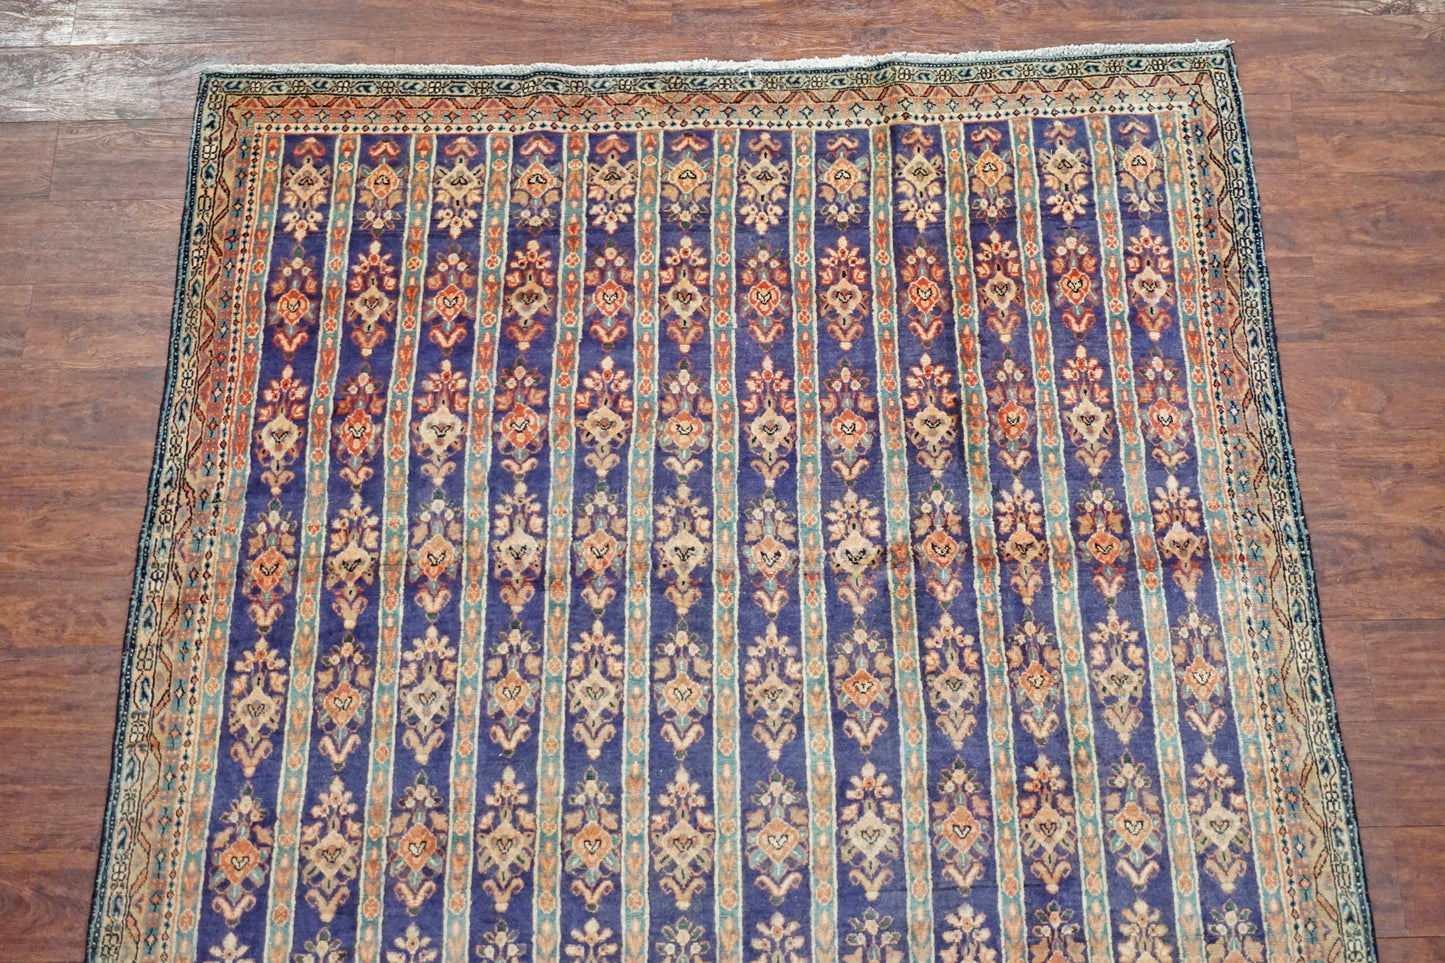 5X8 Antique Persian Sarouk Farahan Rug, circa 1900